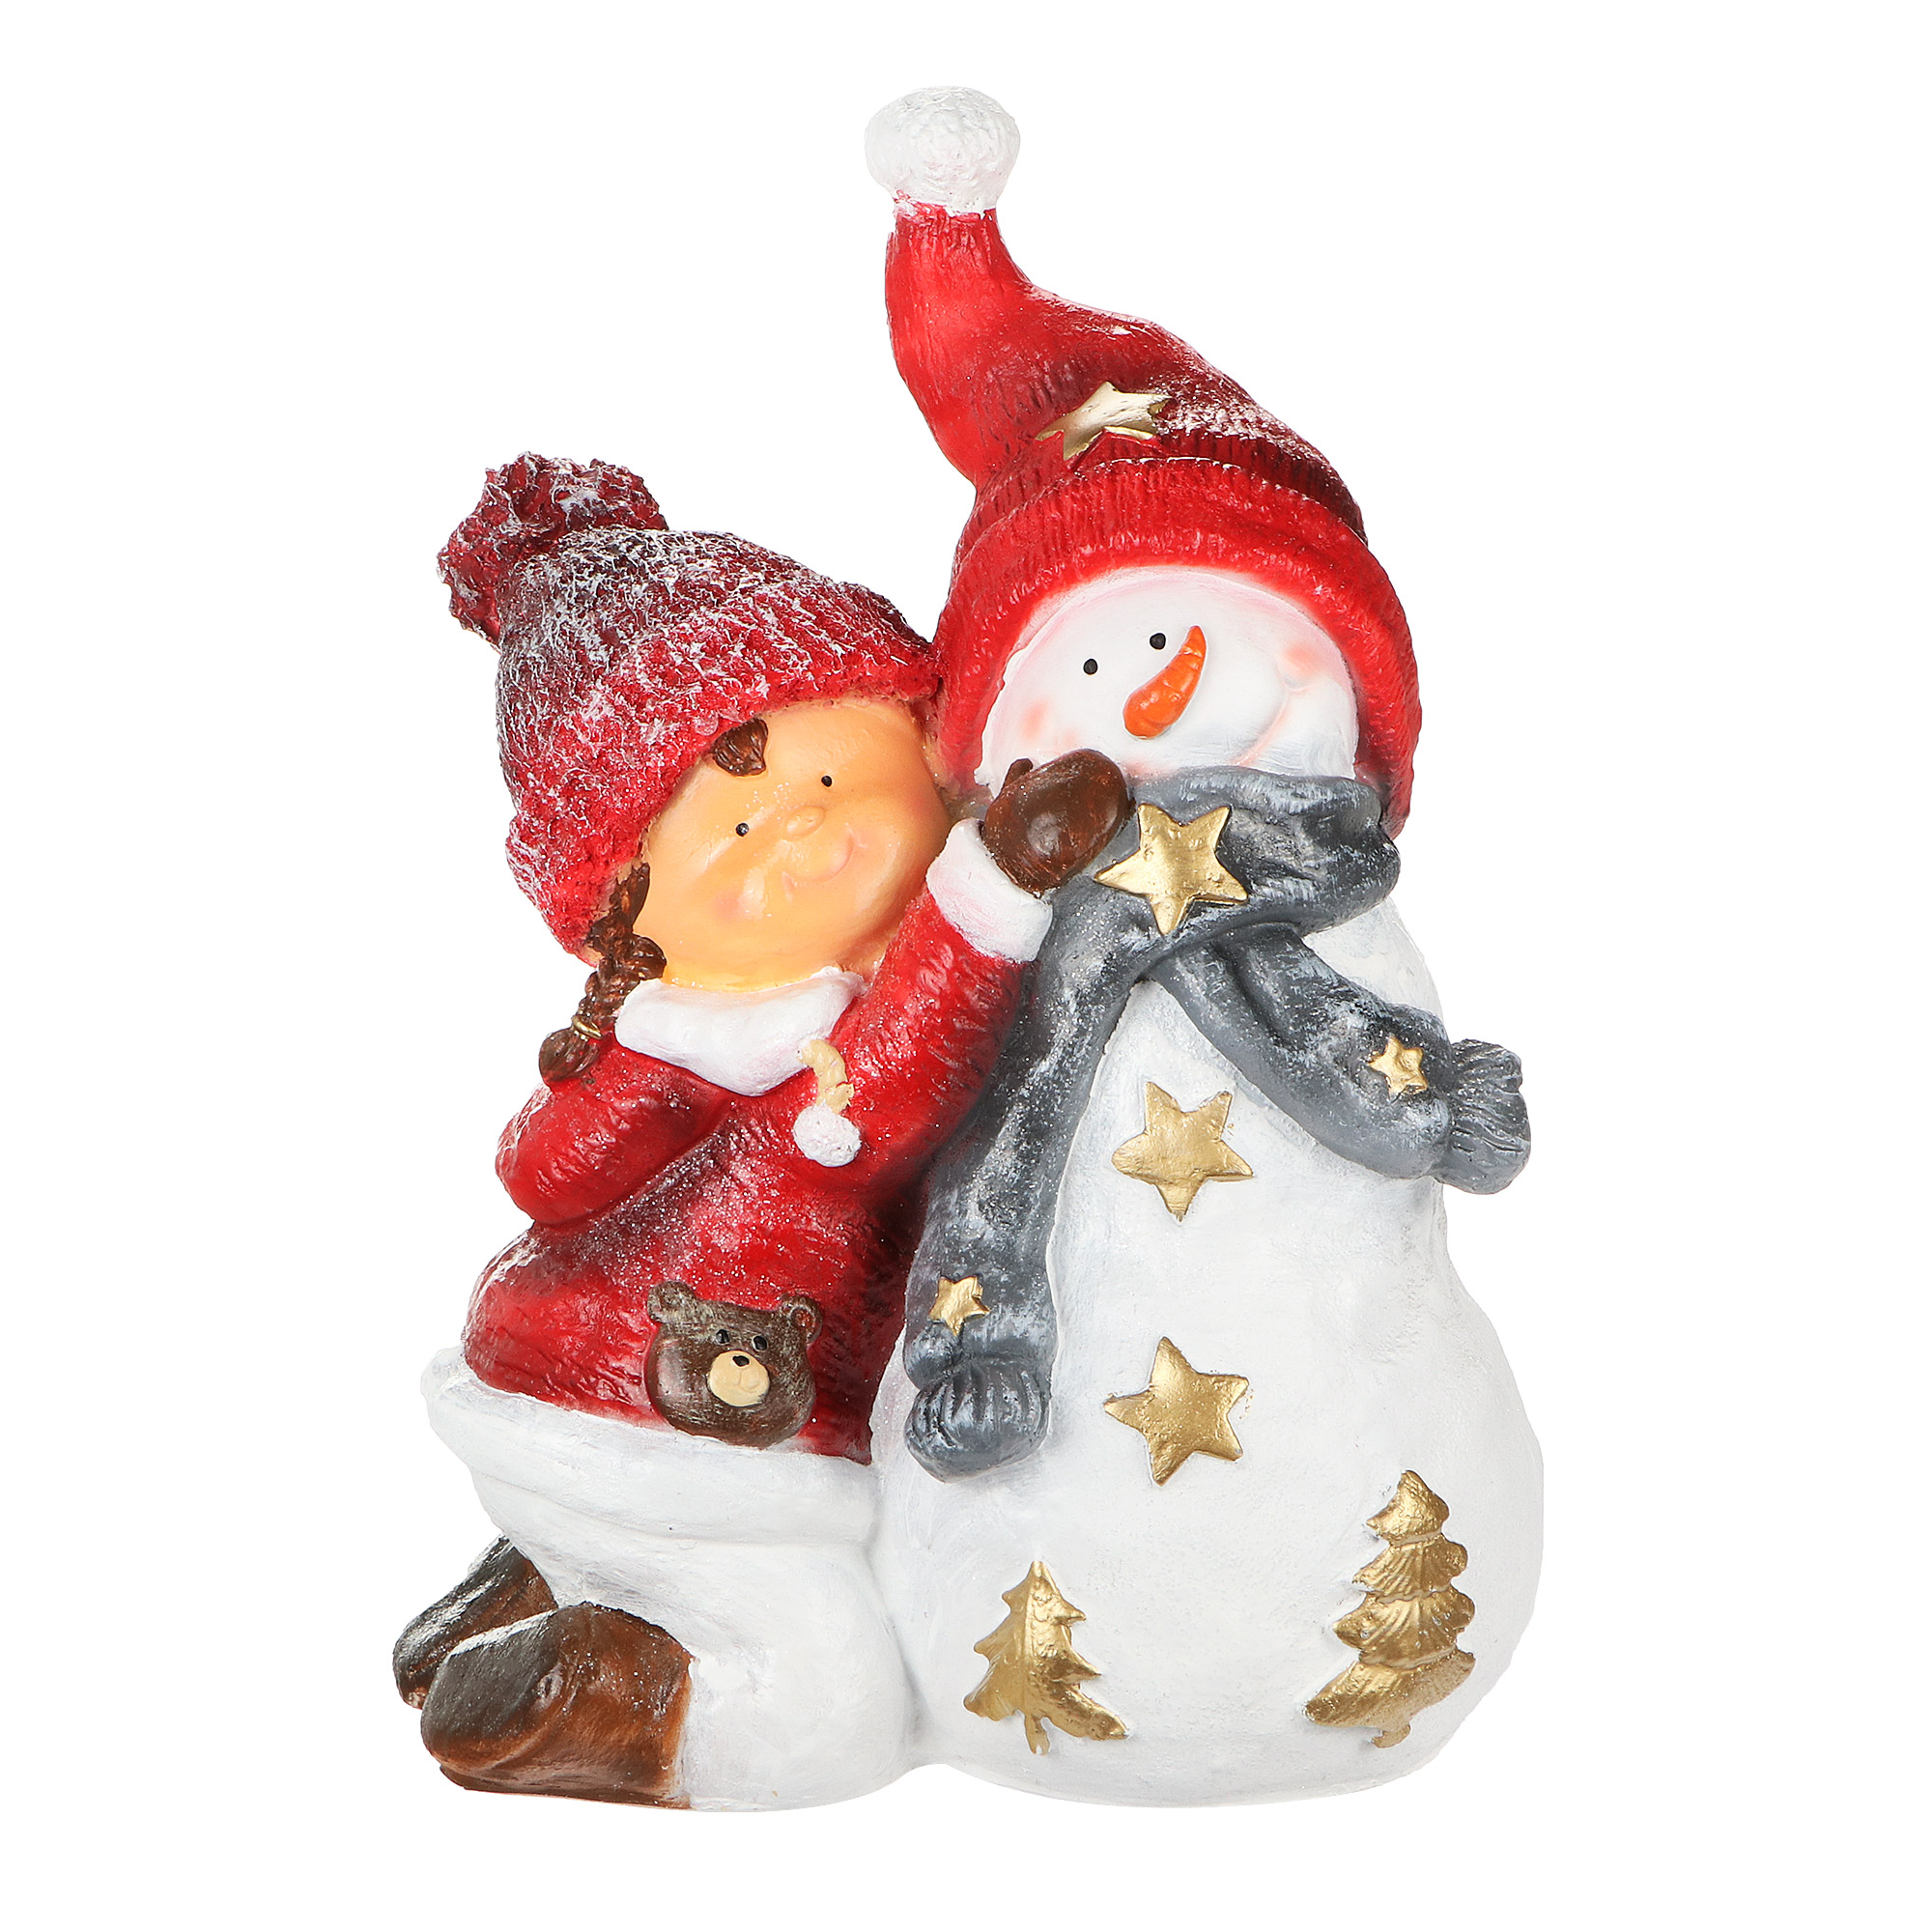 Декоративная новогодняя фигура Тпк полиформ Девочка со снеговиком девочка сидит с мишкой тпк полиформ 22 см